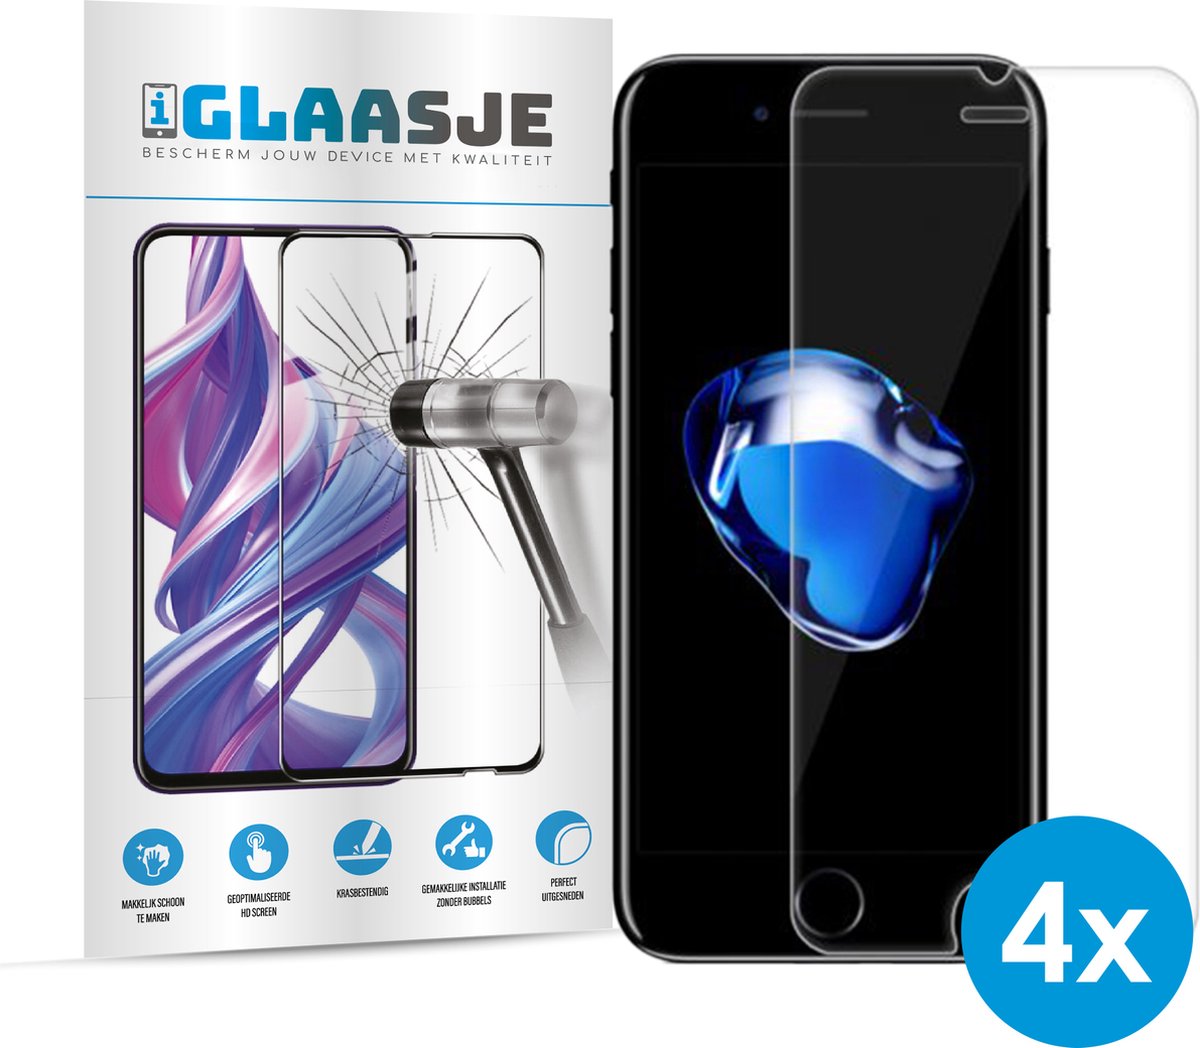 iGlaasje - 4x Screenprotector Telefoonglas Beschermglas - geschikt voor iPhone 7 Plus/8 Plus